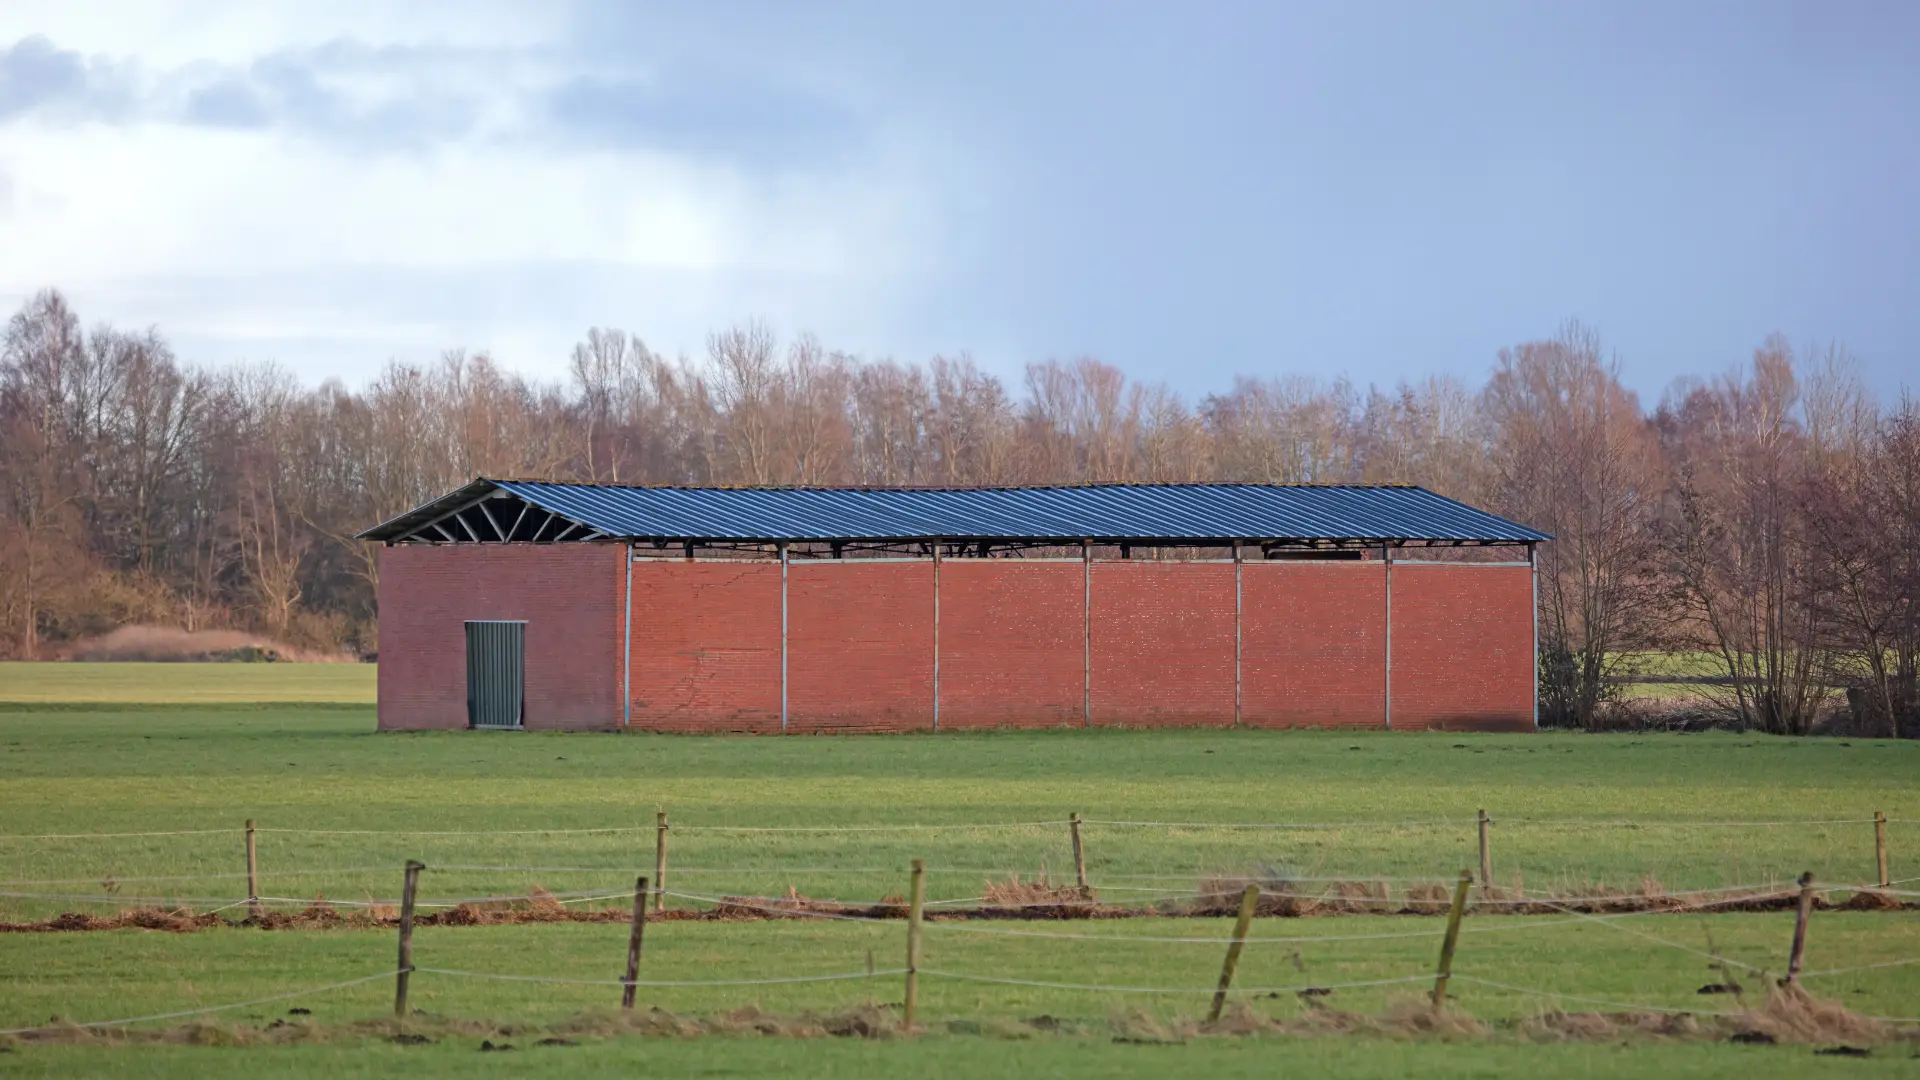 panneaux solaires photovoltaiques sur hangar agricole